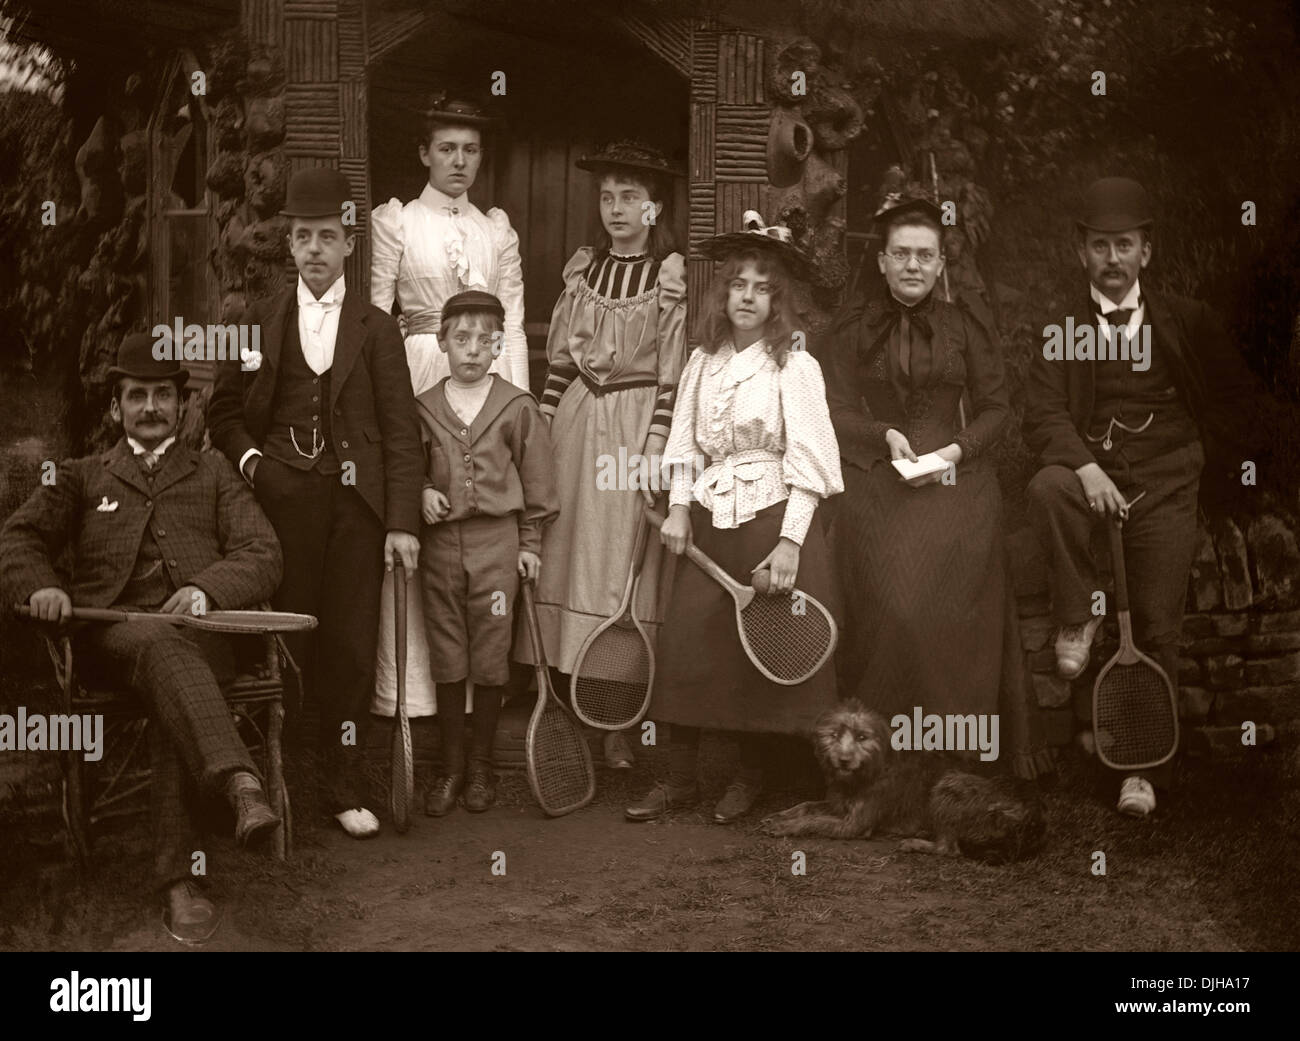 Un groupe de joueurs de tennis à l'époque victorienne ou l'ère d'Edwardian c. 1900. Ils portent des vêtements intelligents pour faire du sport, y compris les chapeaux ! Banque D'Images